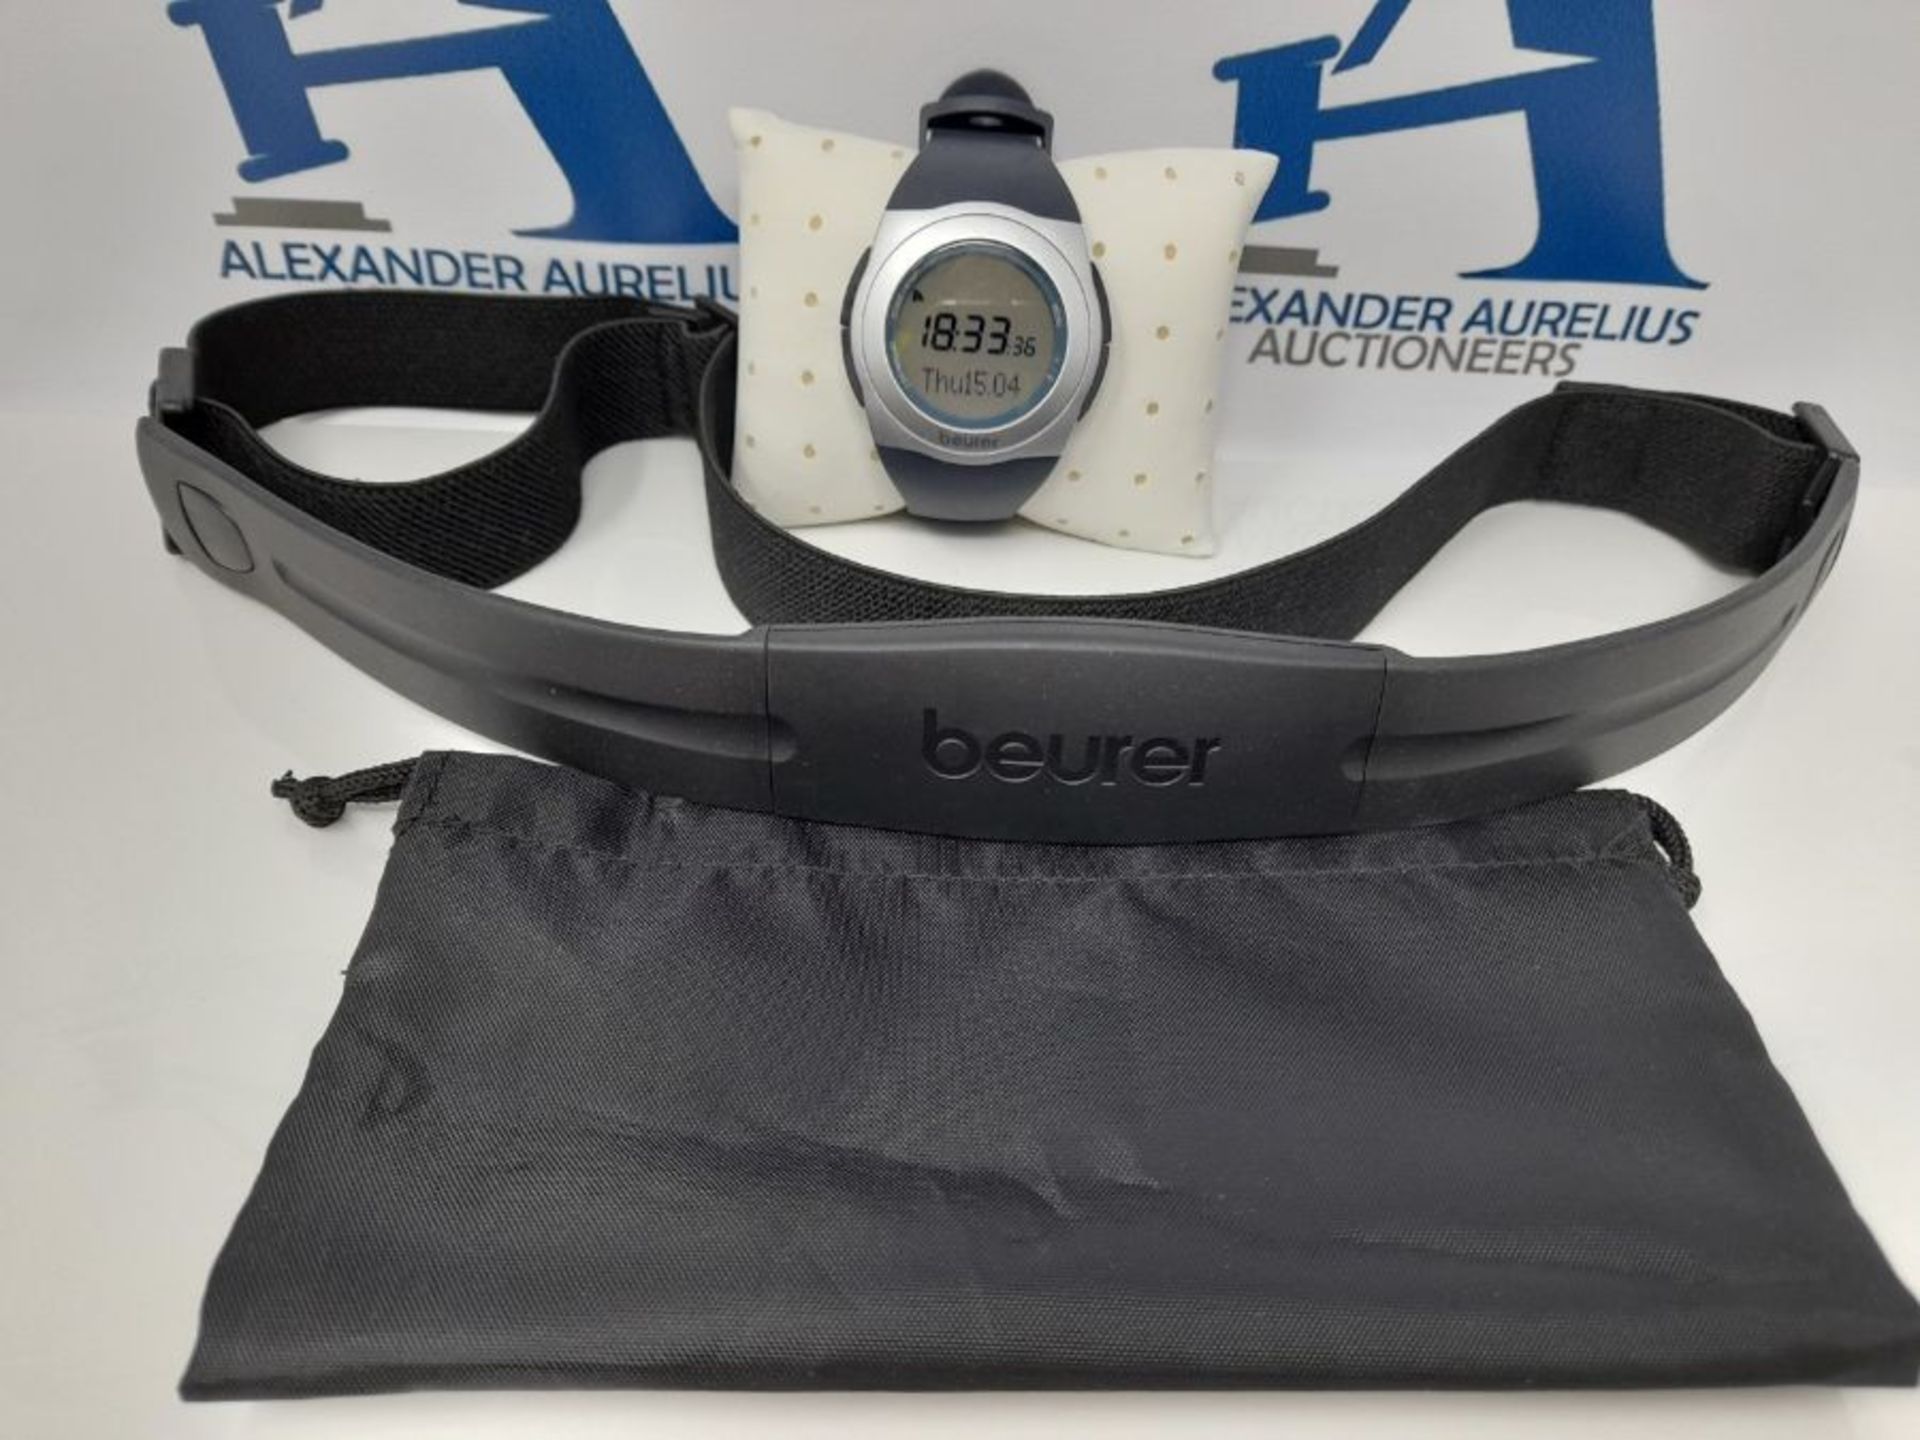 Beurer PM 25 Pulsuhr, mit Brustgurt, Trainingsbereich, Kalorienverbrauch, Fettverbrenn - Image 2 of 3